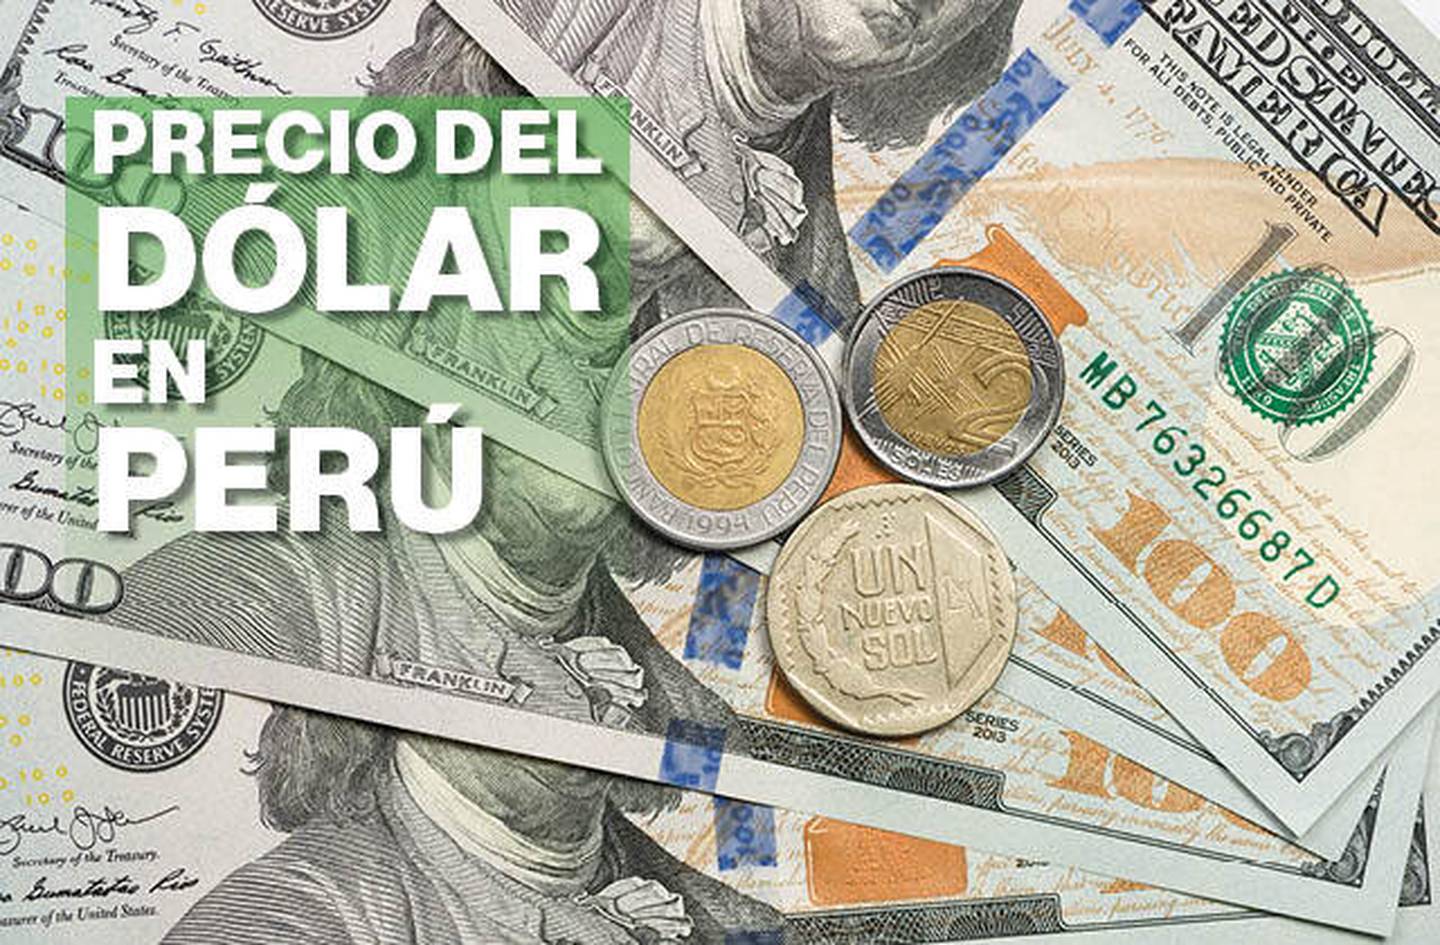 Dólar Perú: Sol cayó menos que otras divisas de LatAm ante crisis en Ucrania, ¿por qué?dfd